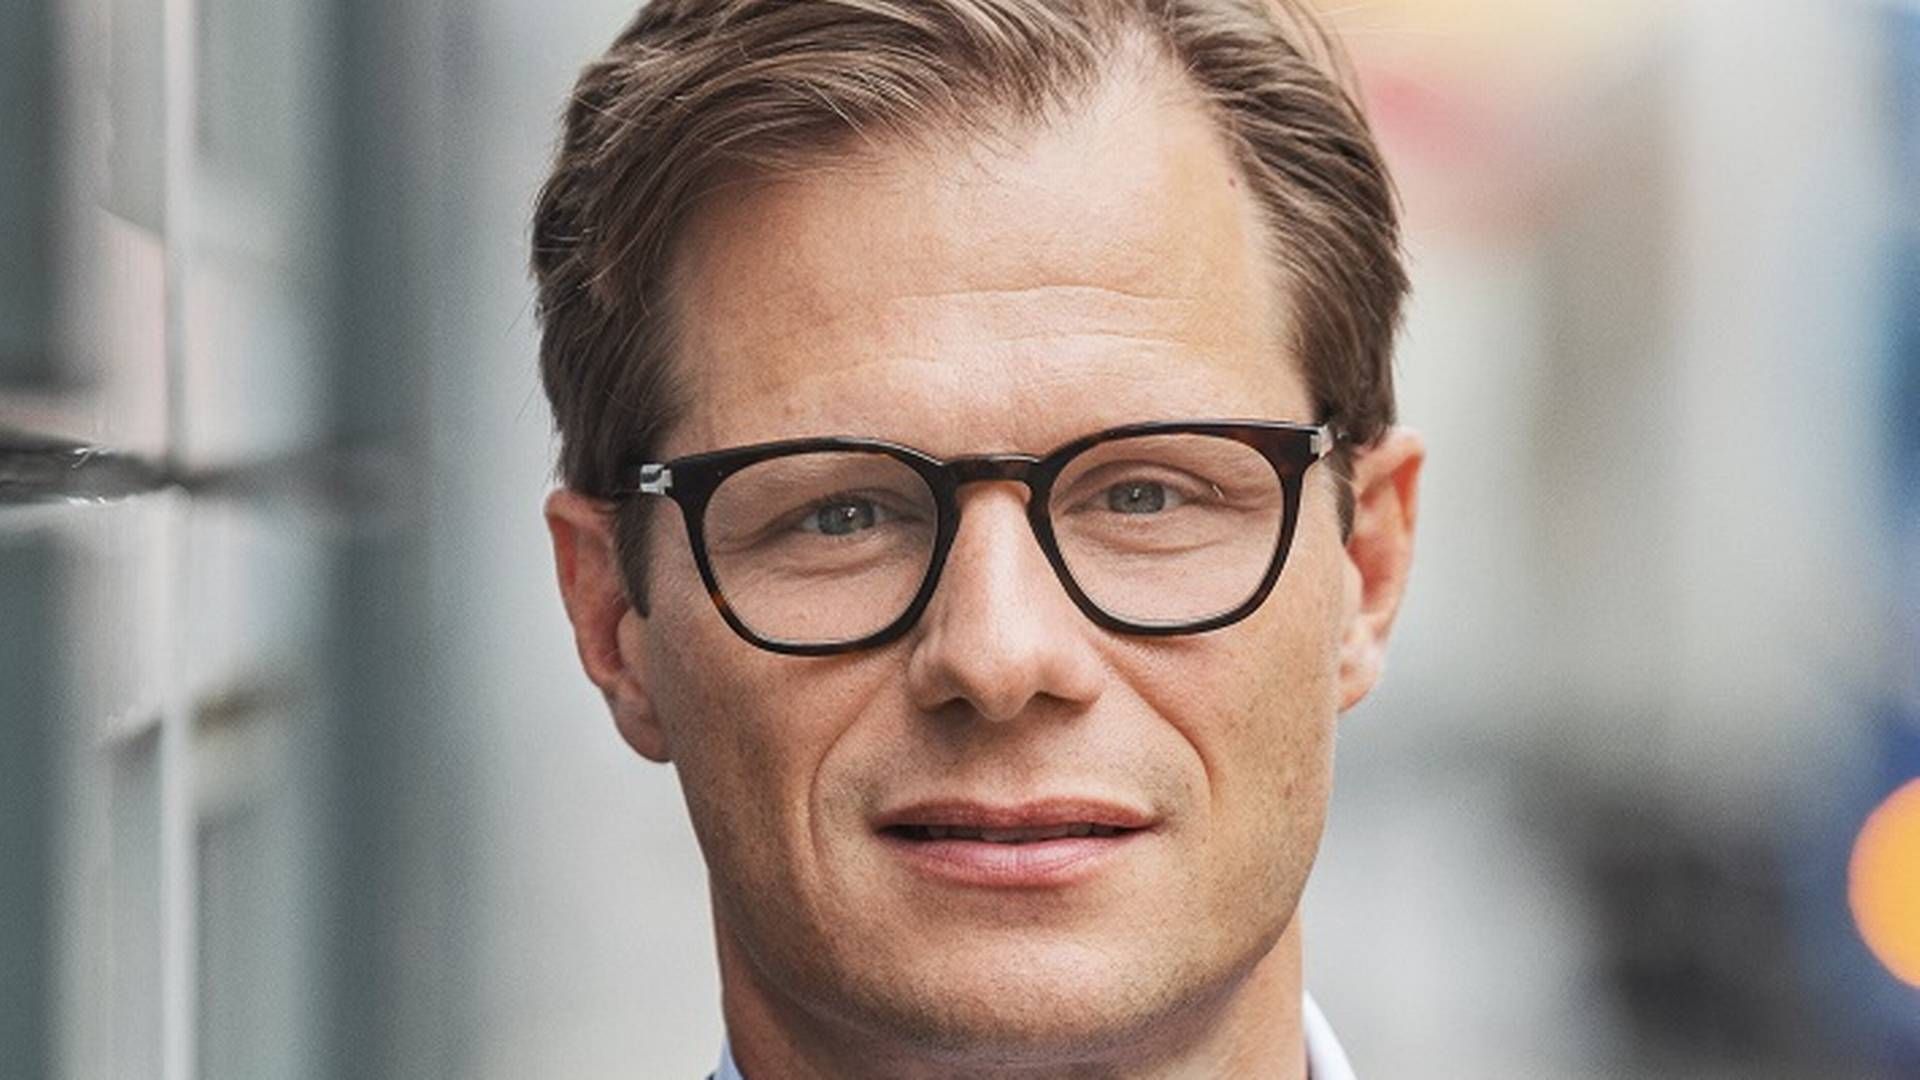 Carsten Egeriis er adm. direktør i Danske Bank, som for nylig har udgivet en klimaplan. | Foto: Pr/danske Bank